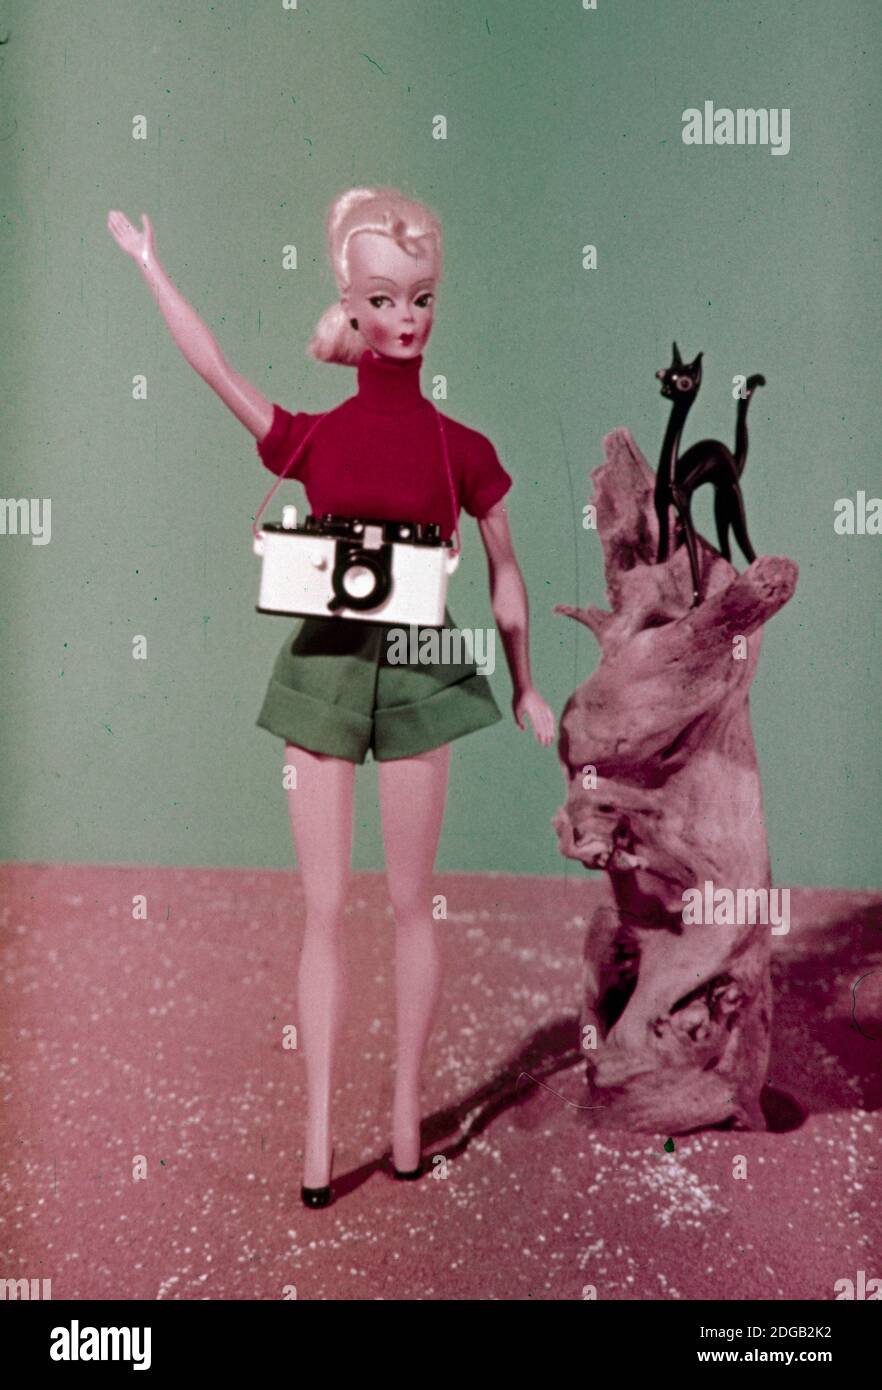 Barbie Doll Werbung Bild, 1959 Stockfotografie - Alamy